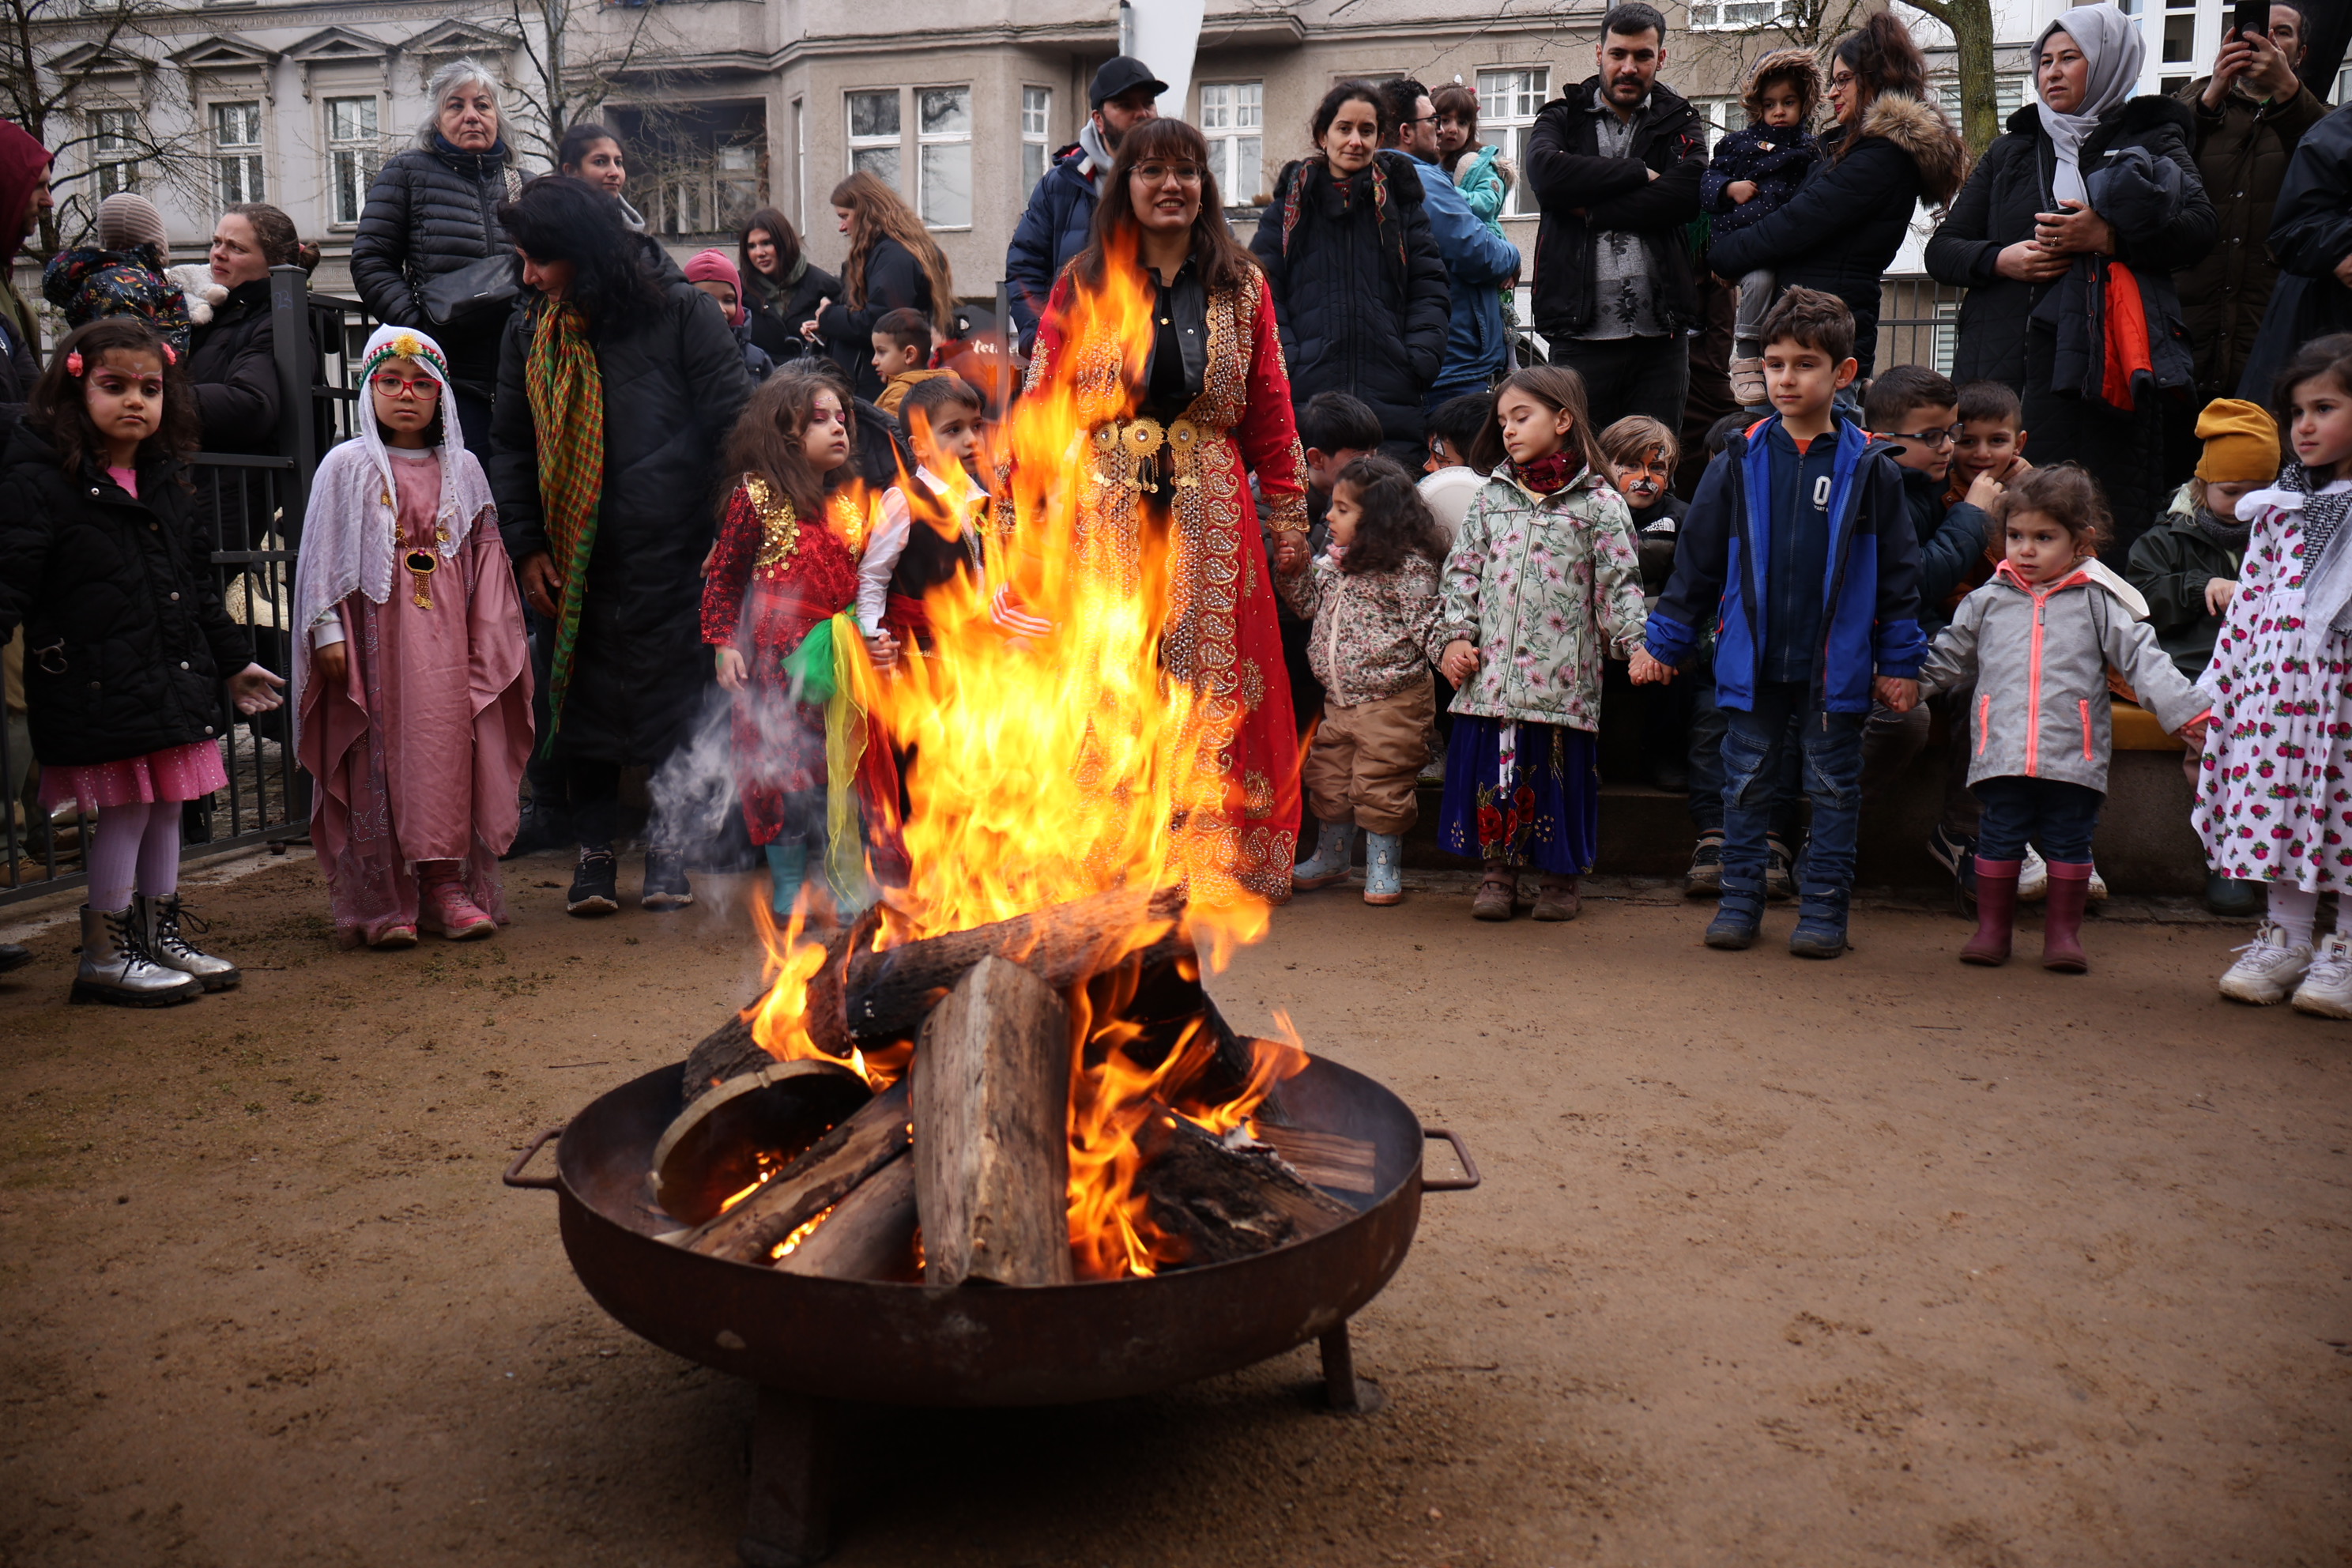 Unser Newroz Kinder- und Familienfest in Berlin war ein Tag voller Freude